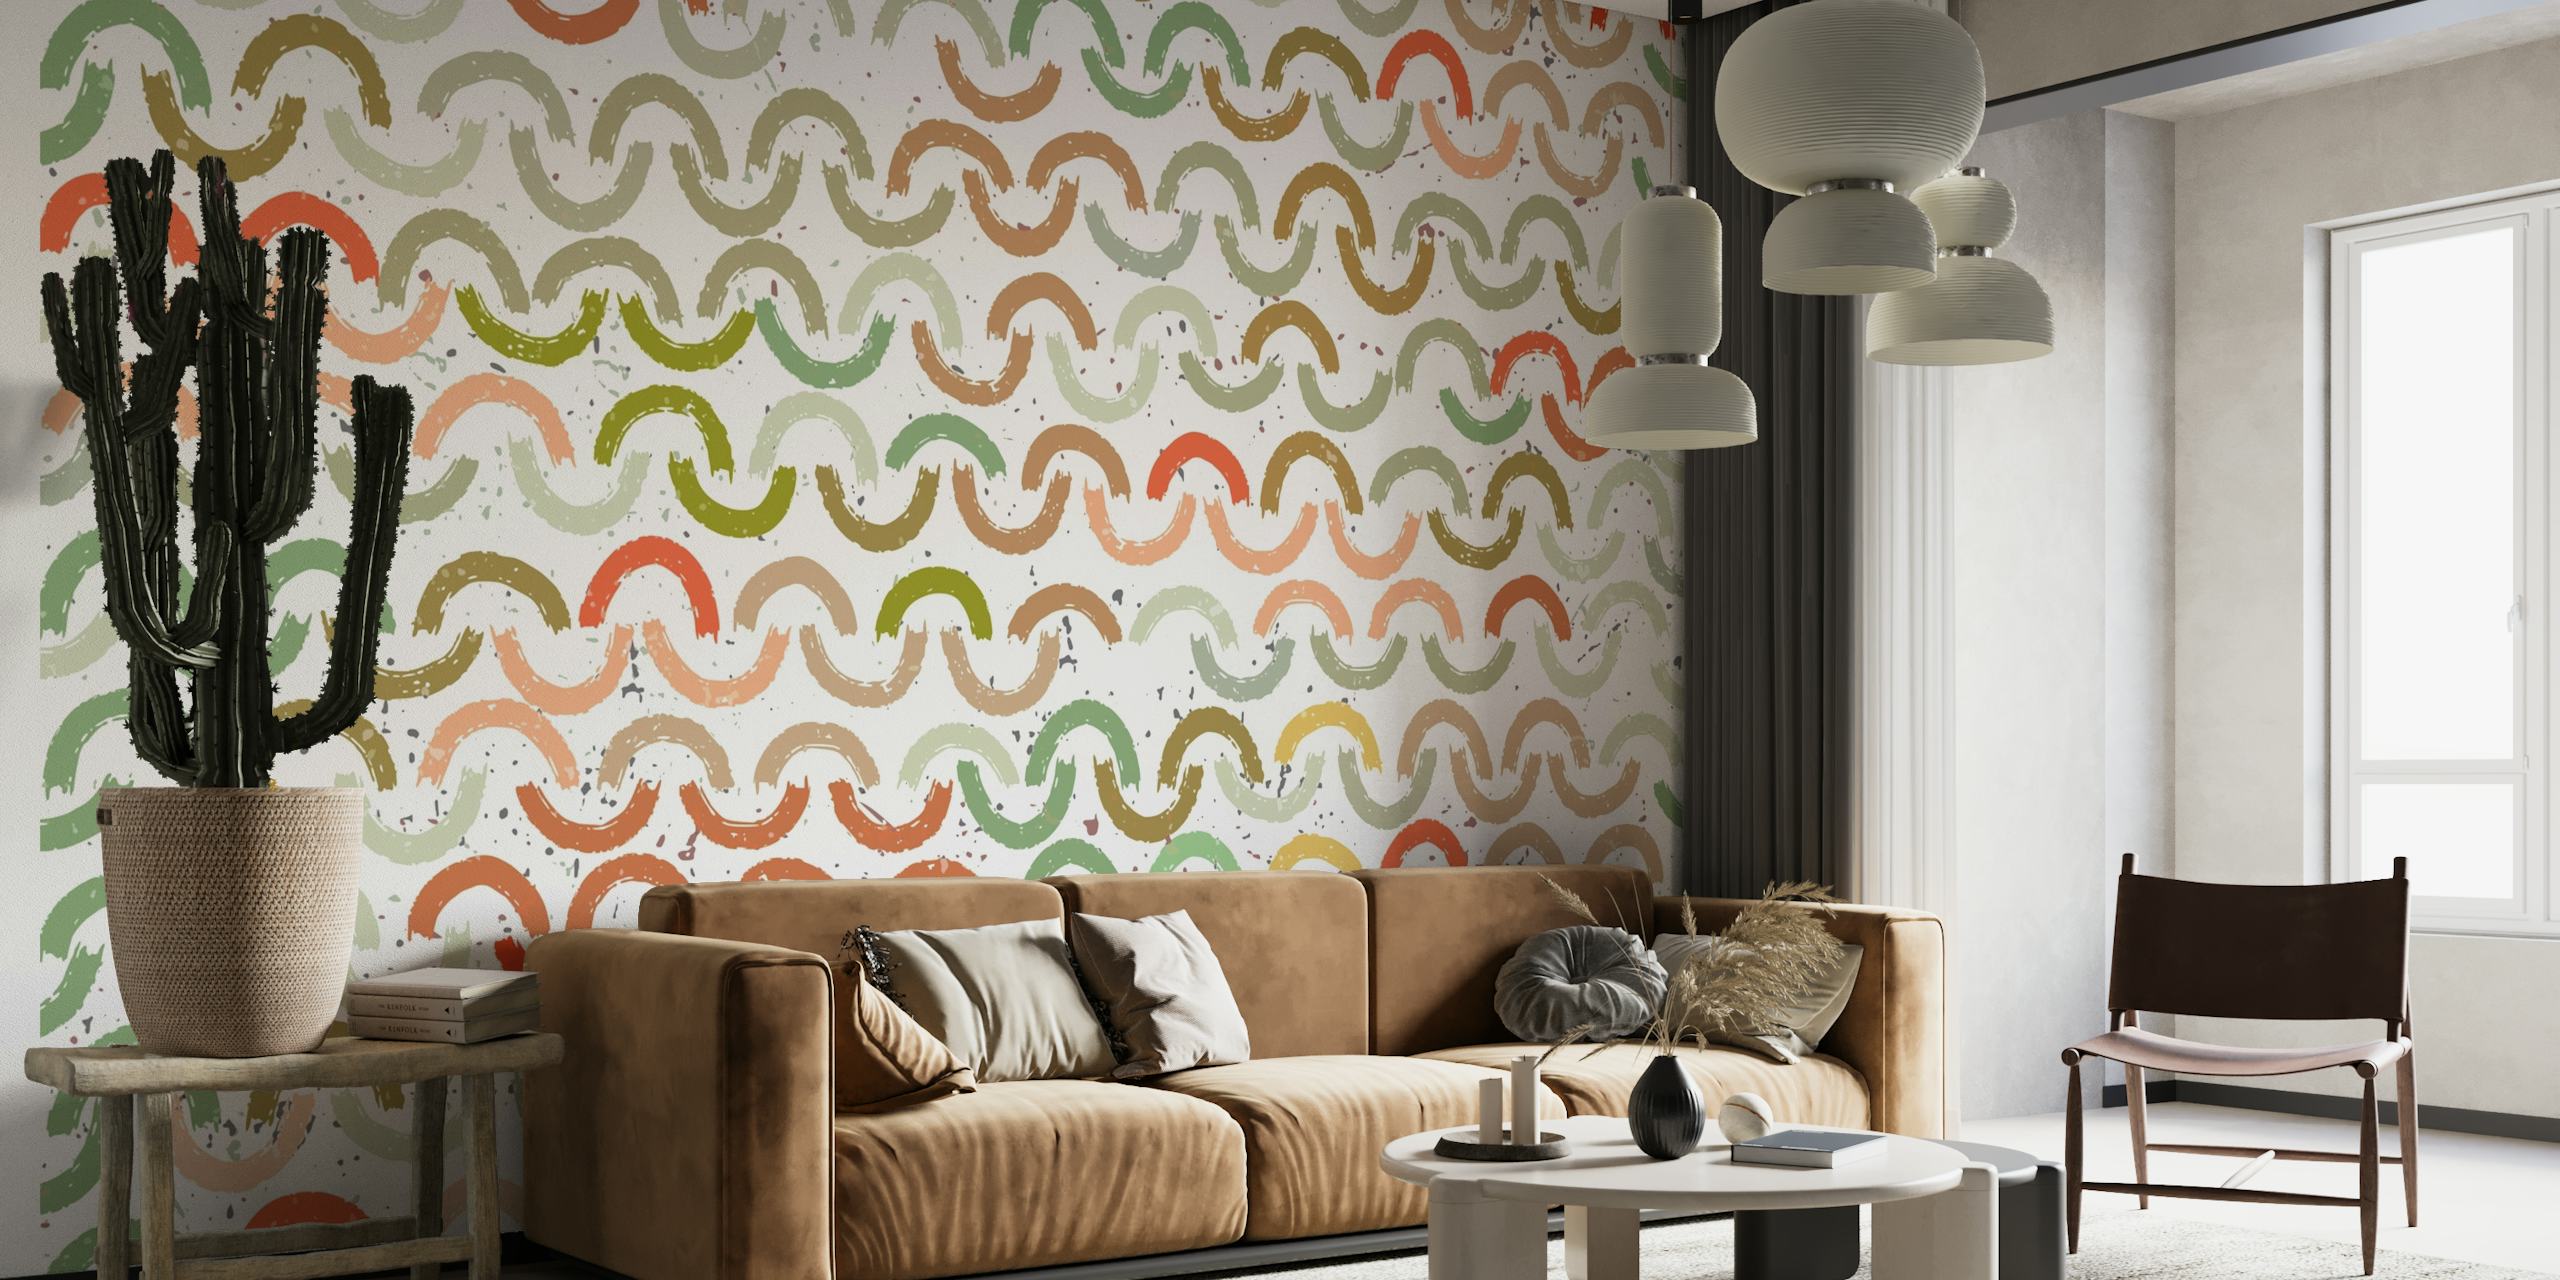 Mural de parede colorido com padrão de arcos pintados em vários tons